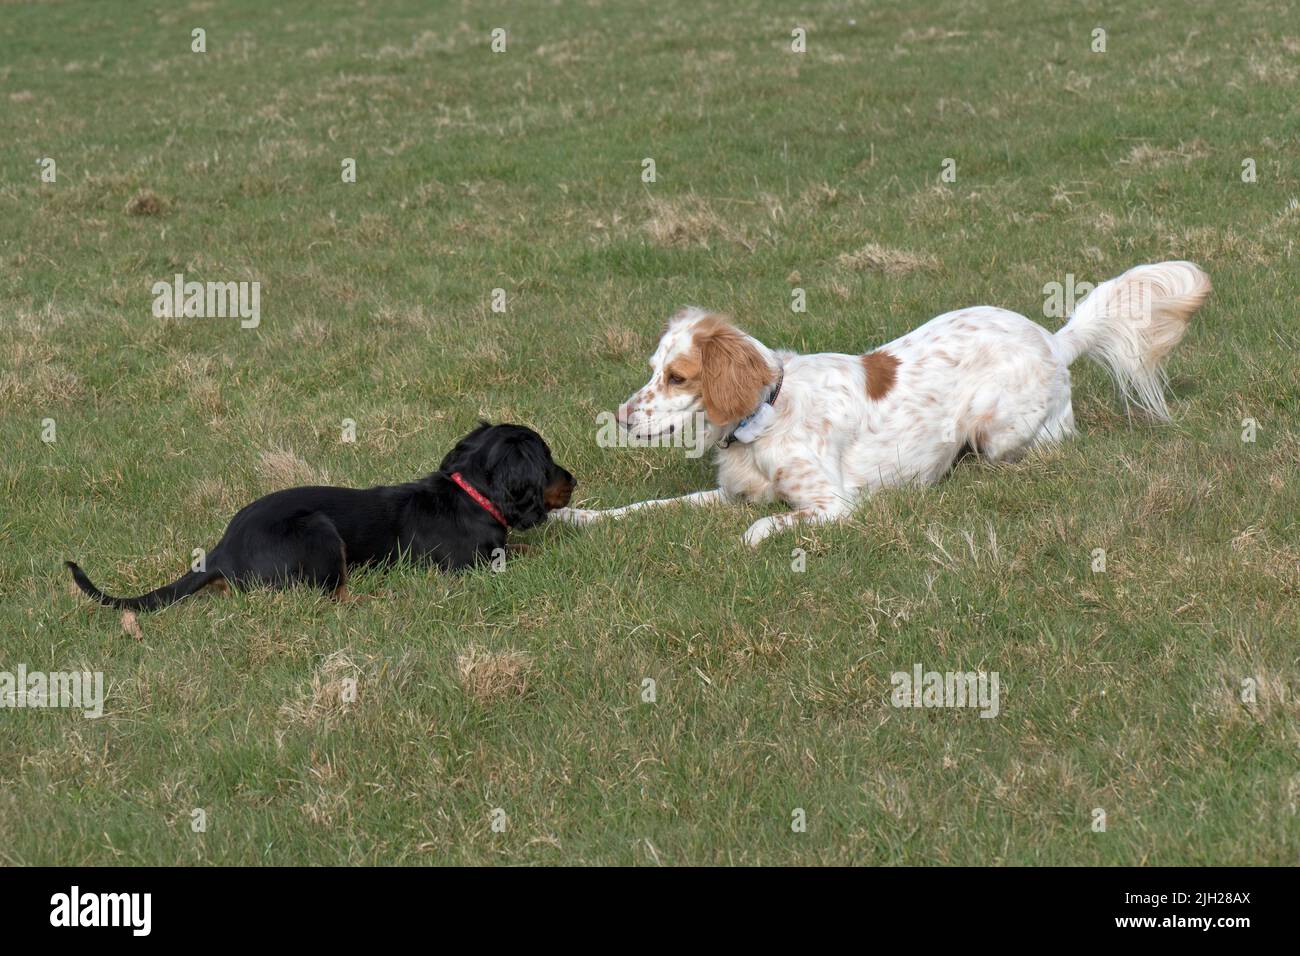 Un perro setter inglés jugando con un cachorro de trabajo spaniel y divertirse a pesar de su tamaño y diferencia de edad, Berkshire, abril Foto de stock